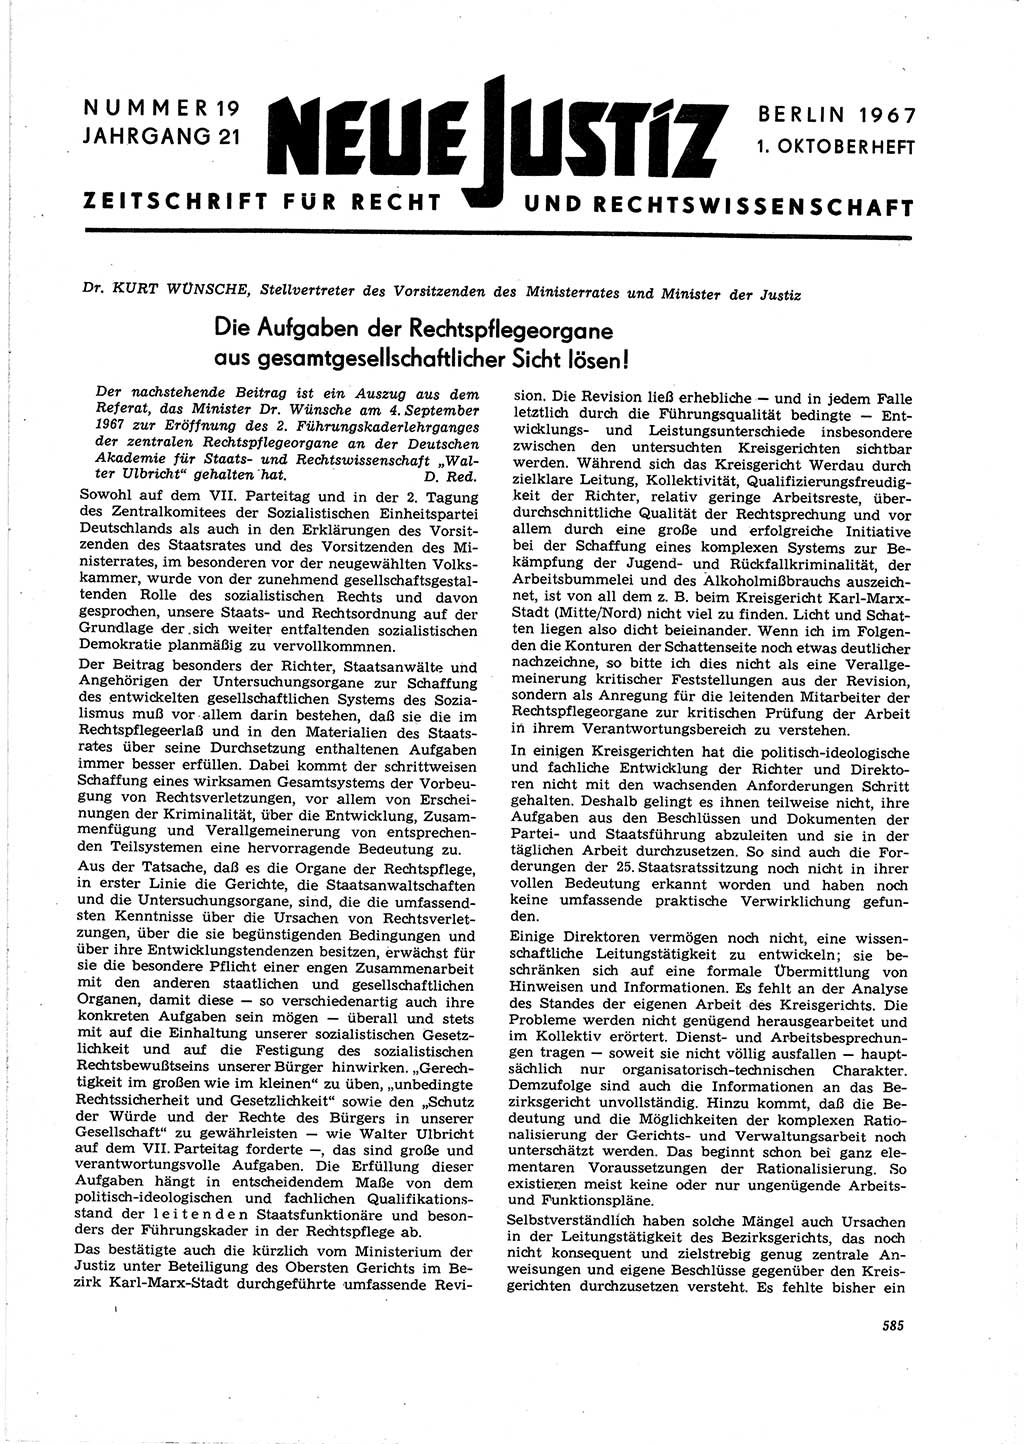 Neue Justiz (NJ), Zeitschrift für Recht und Rechtswissenschaft [Deutsche Demokratische Republik (DDR)], 21. Jahrgang 1967, Seite 585 (NJ DDR 1967, S. 585)